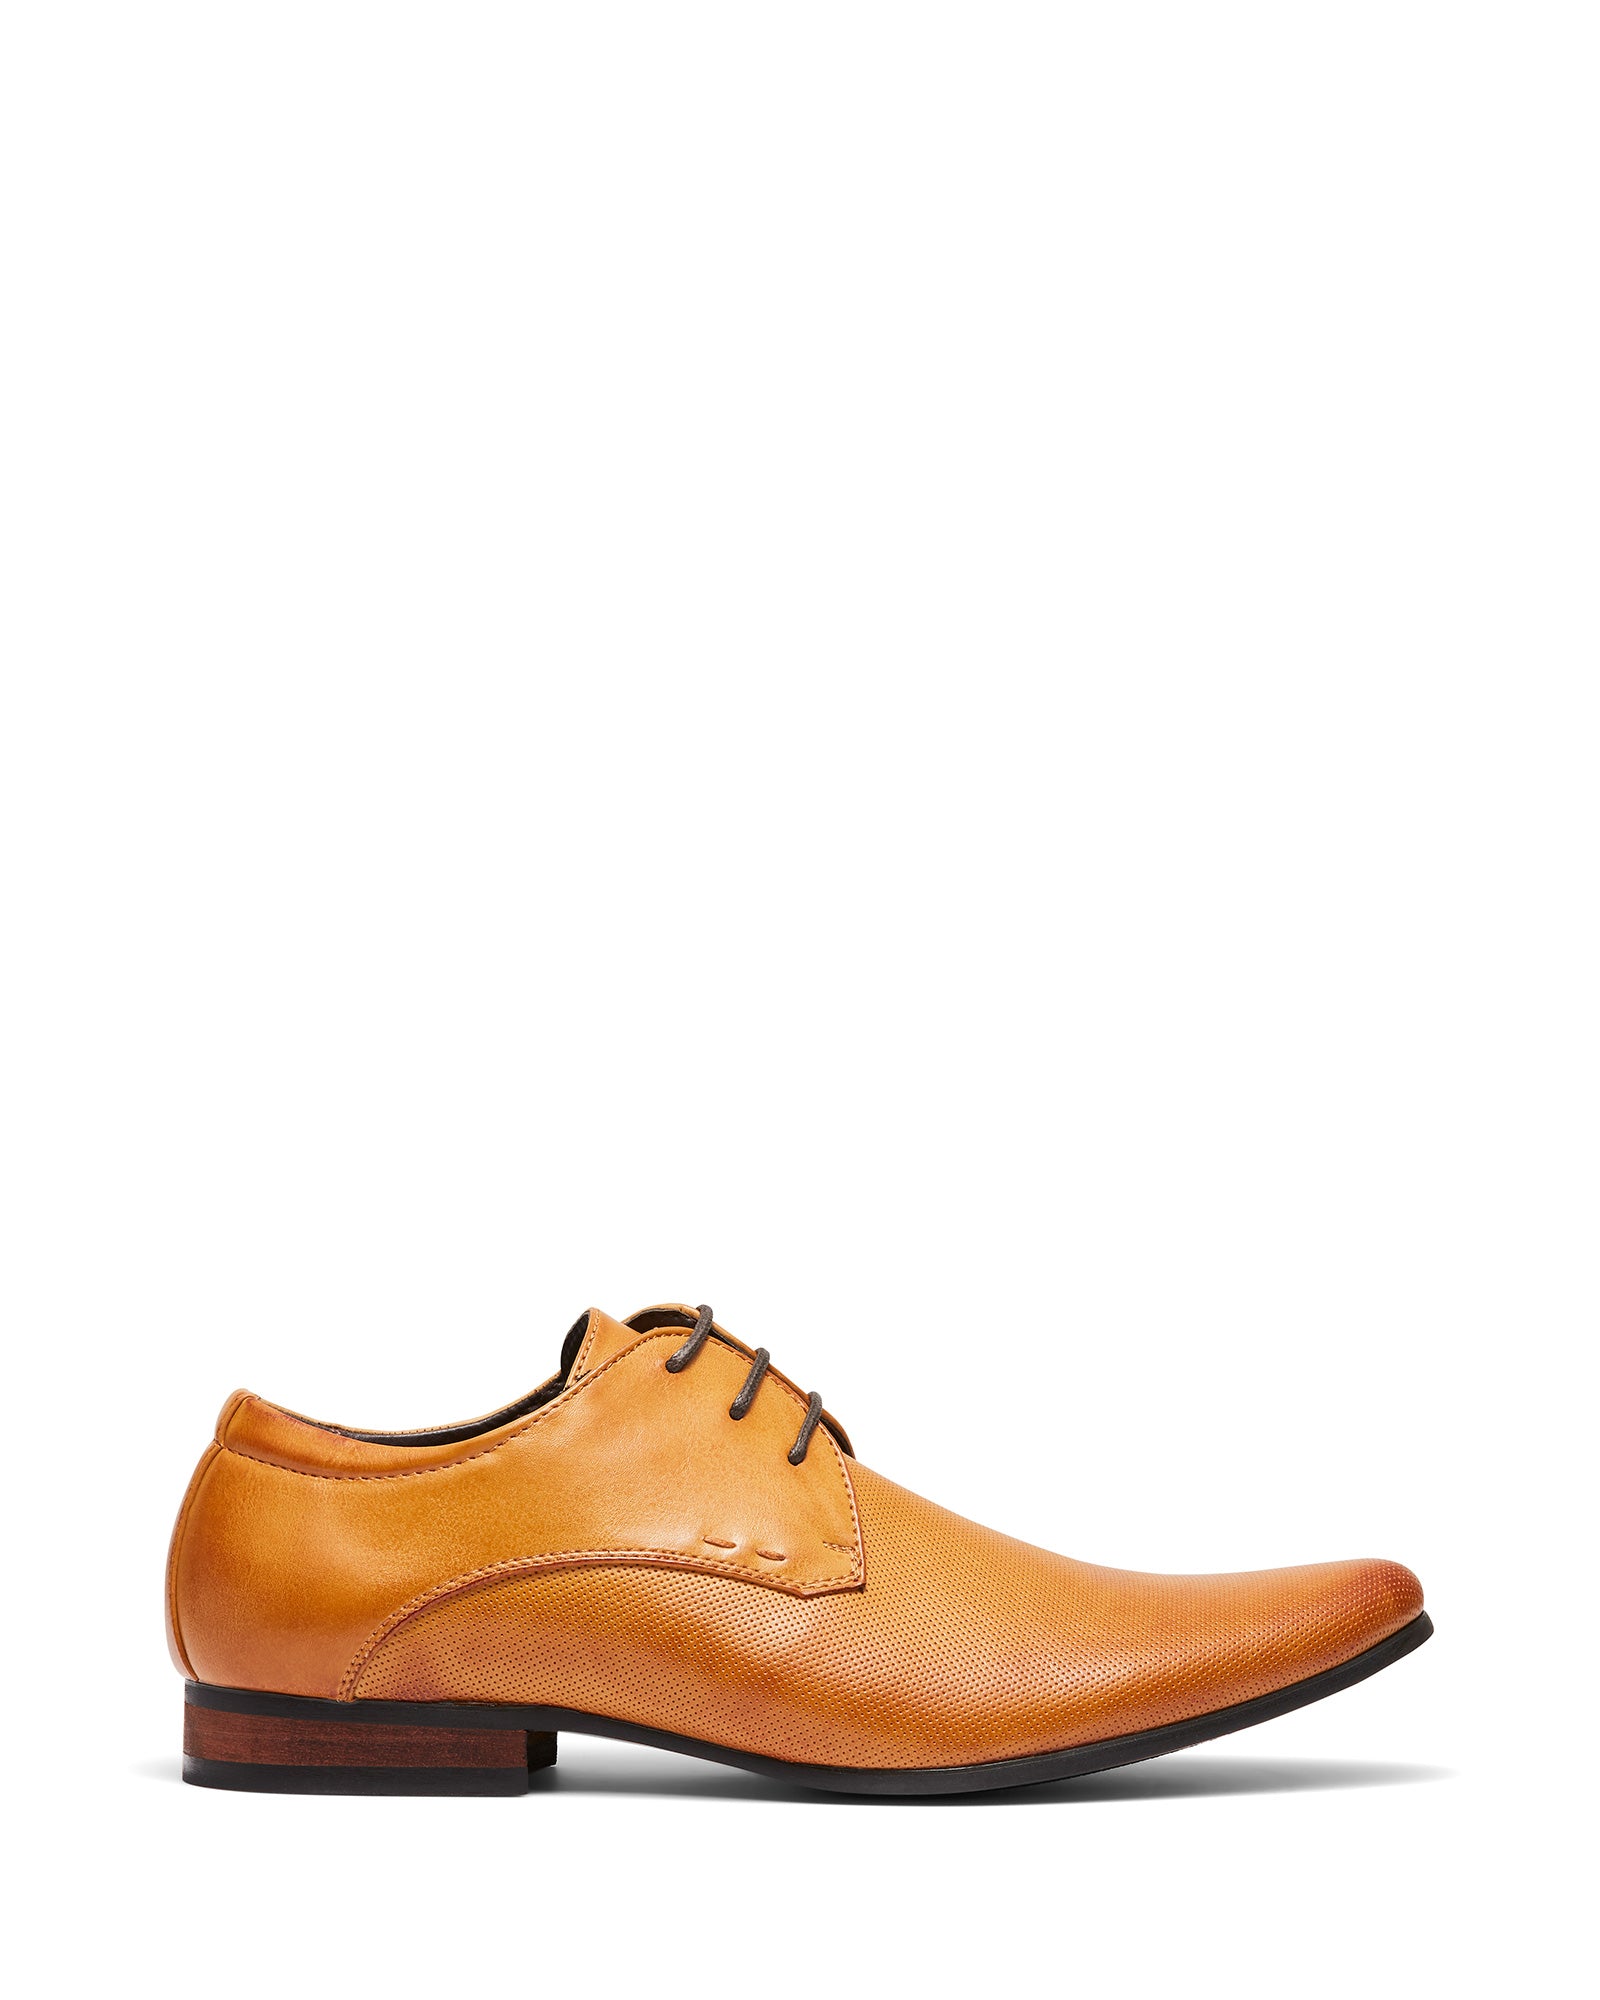 Uncut Shoes Beveridge Tan | Men's Dress Shoe | Derby | Lace Up | Office